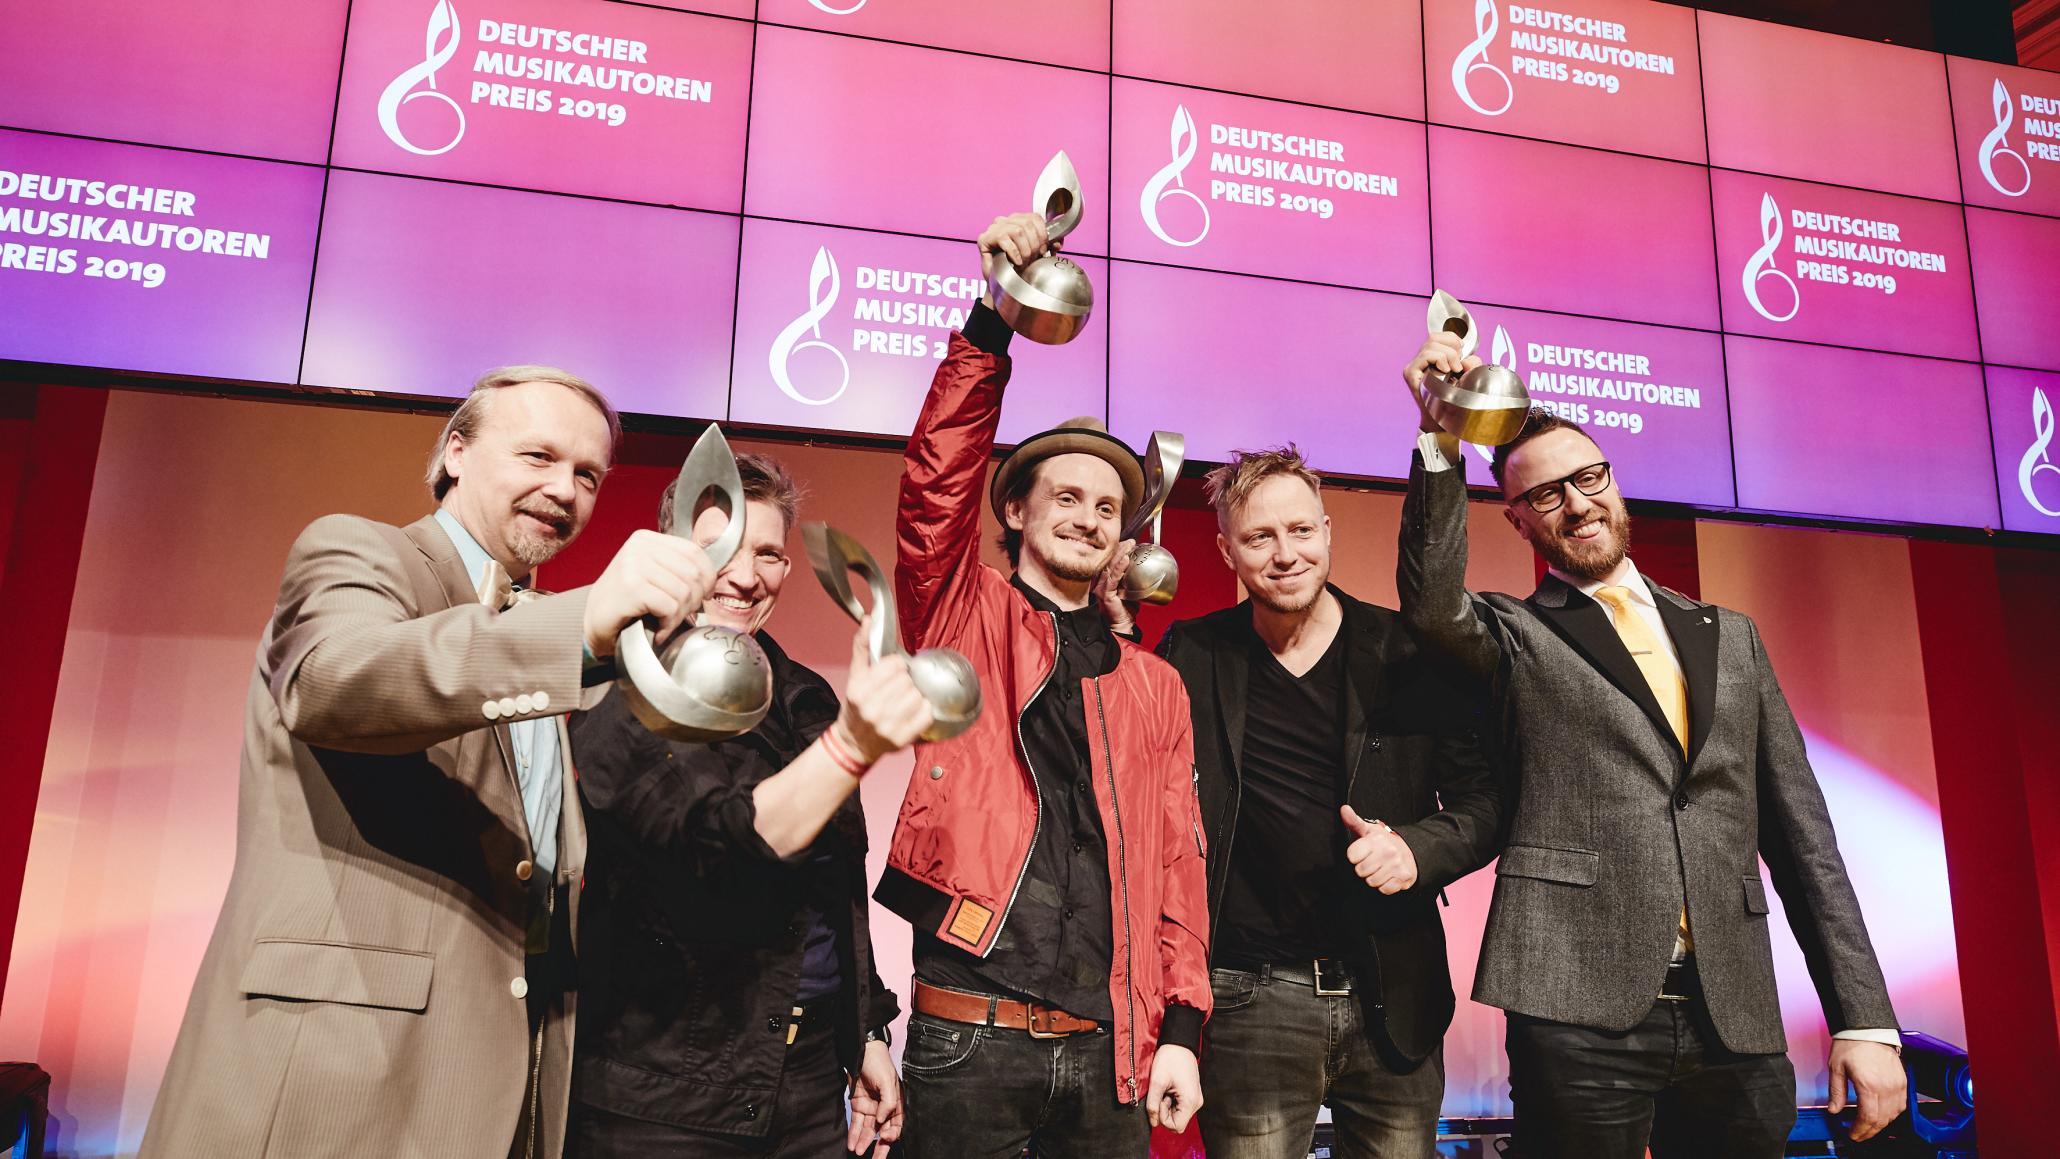 Das war der Deutsche Musikautorenpreis 2019 